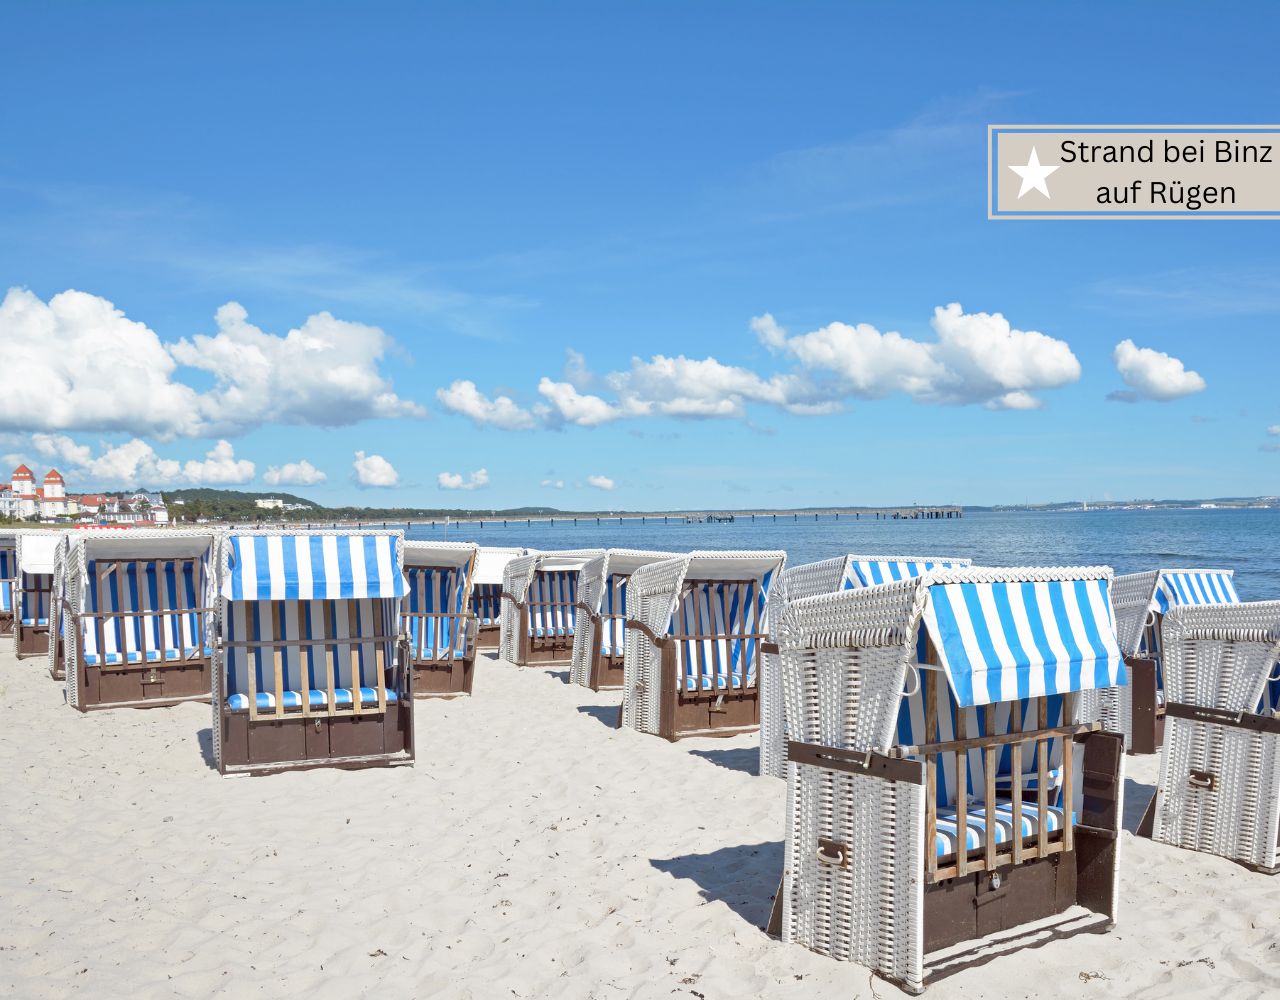 Ferienpark Rügen - am Strand bei Binz